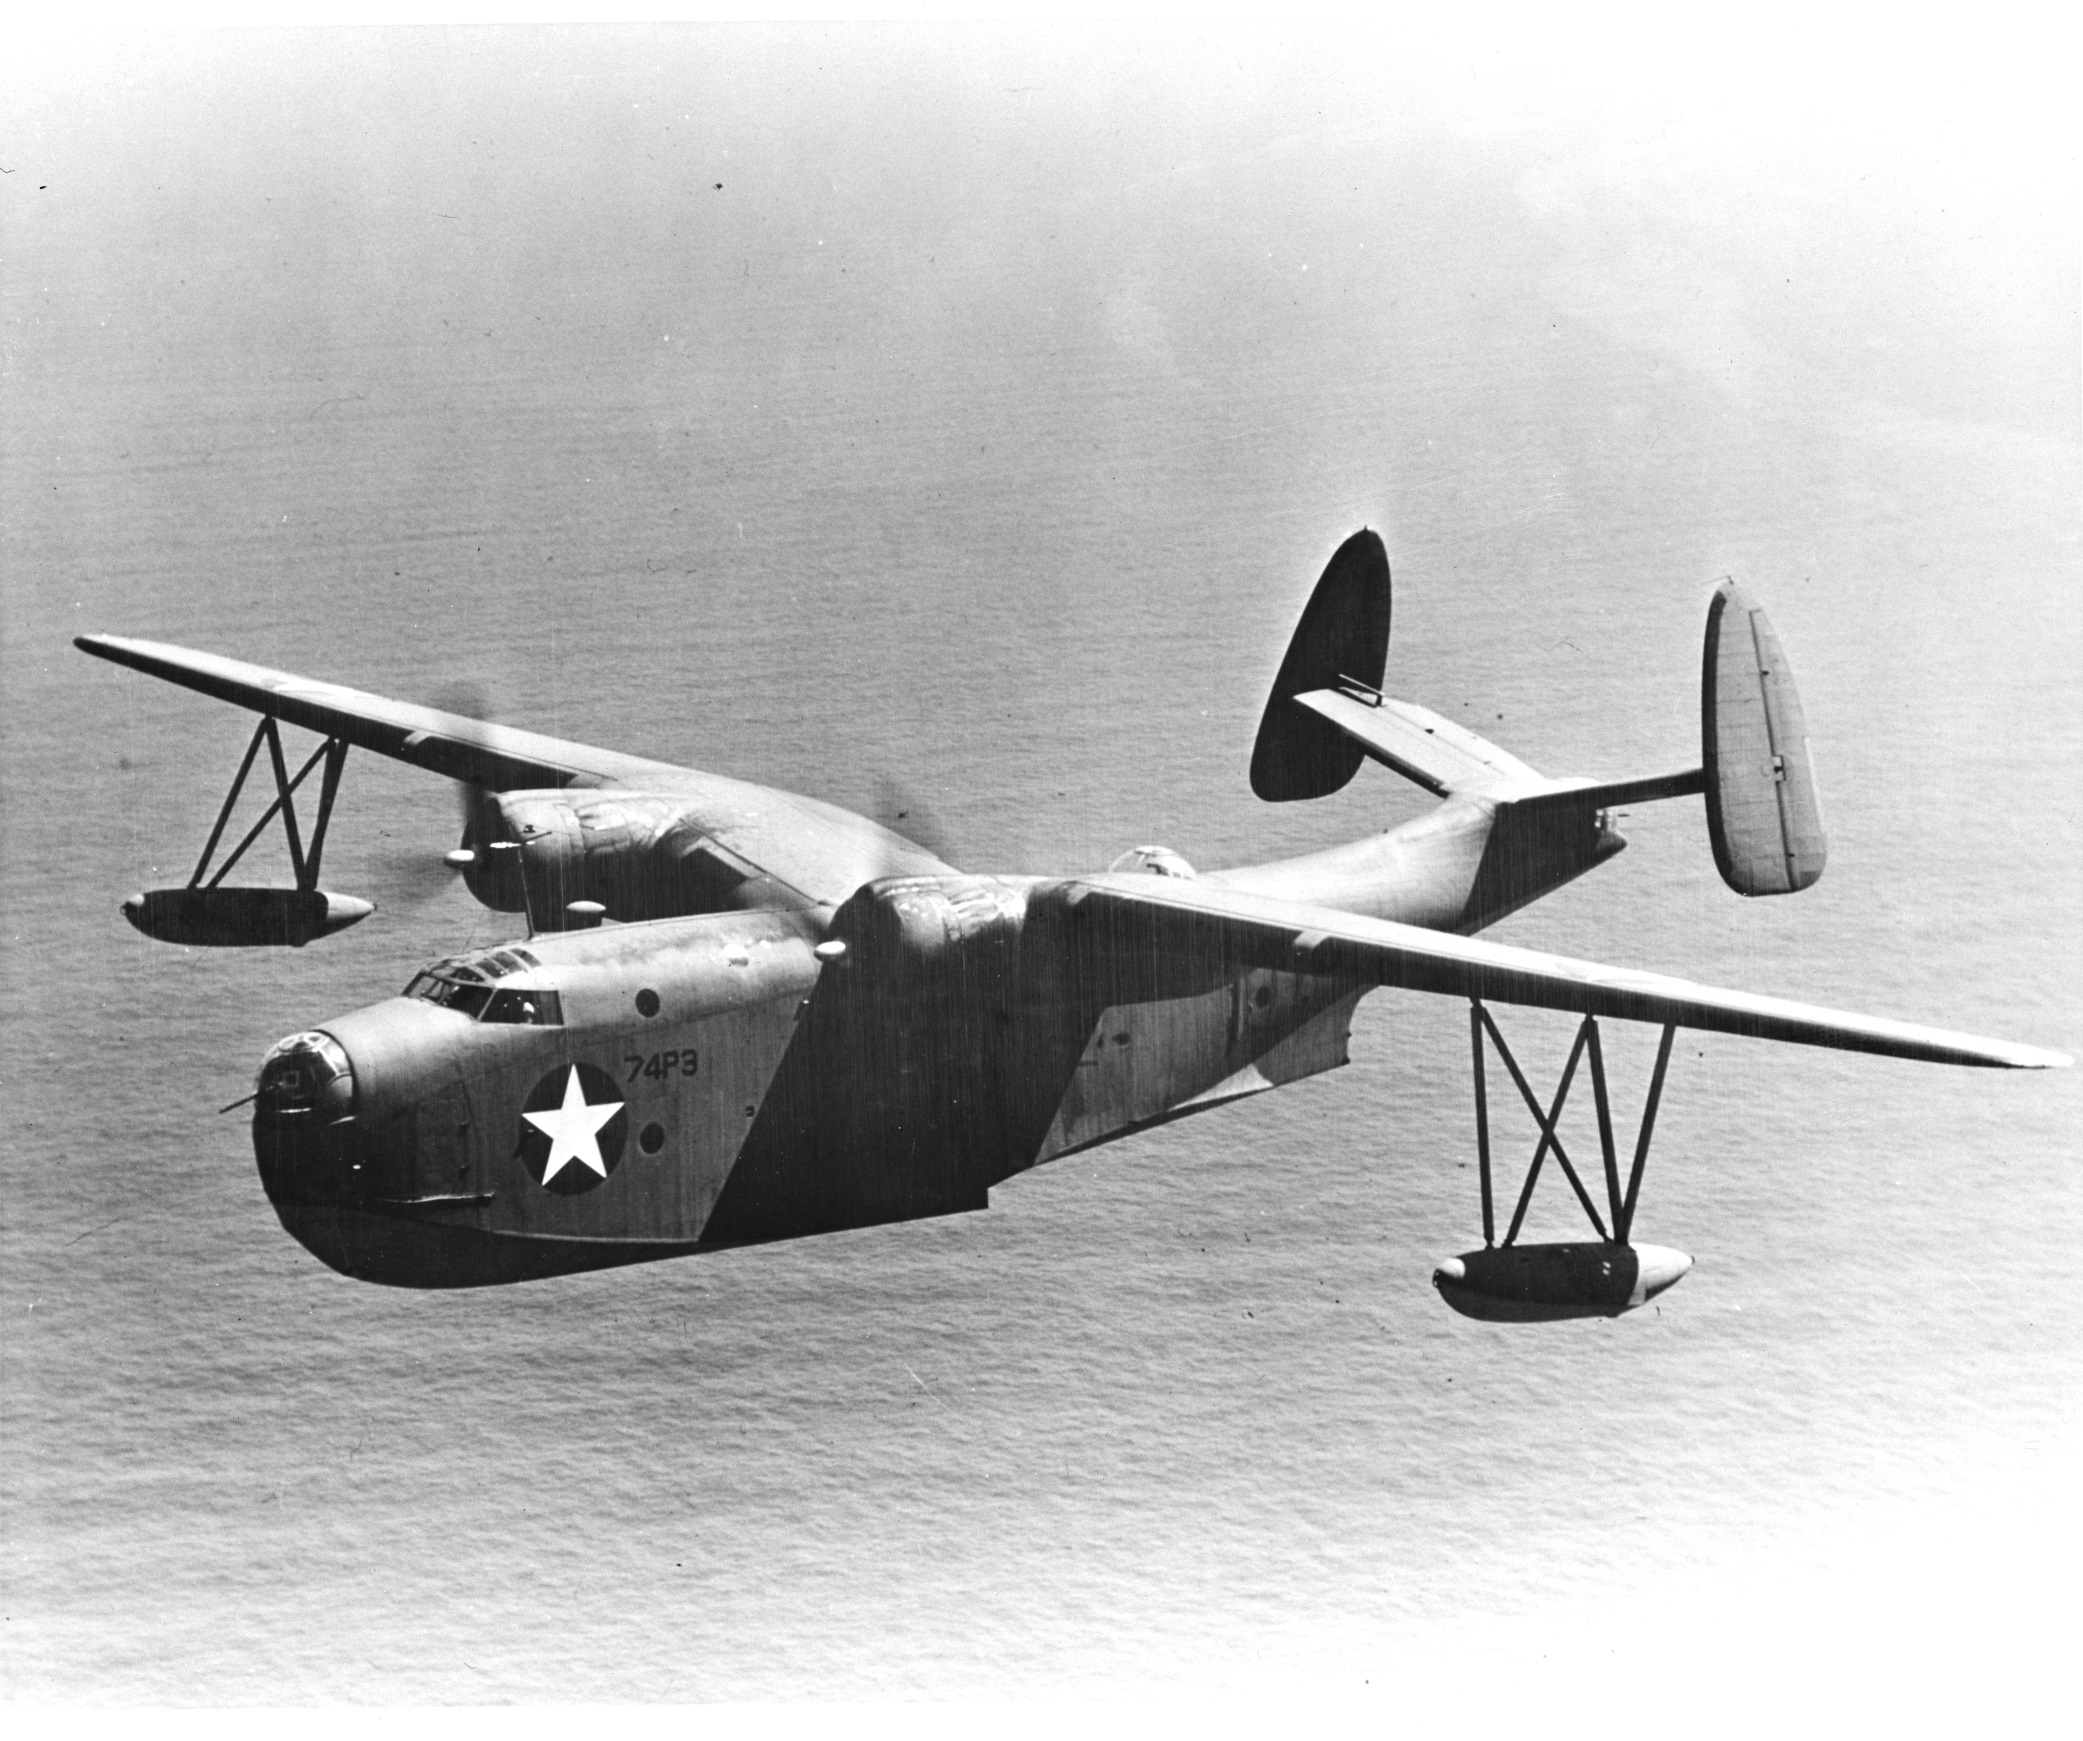 PBM-3 Mariner aircraft of US Navy Patrol Squadron VP-74 in flight, 1942